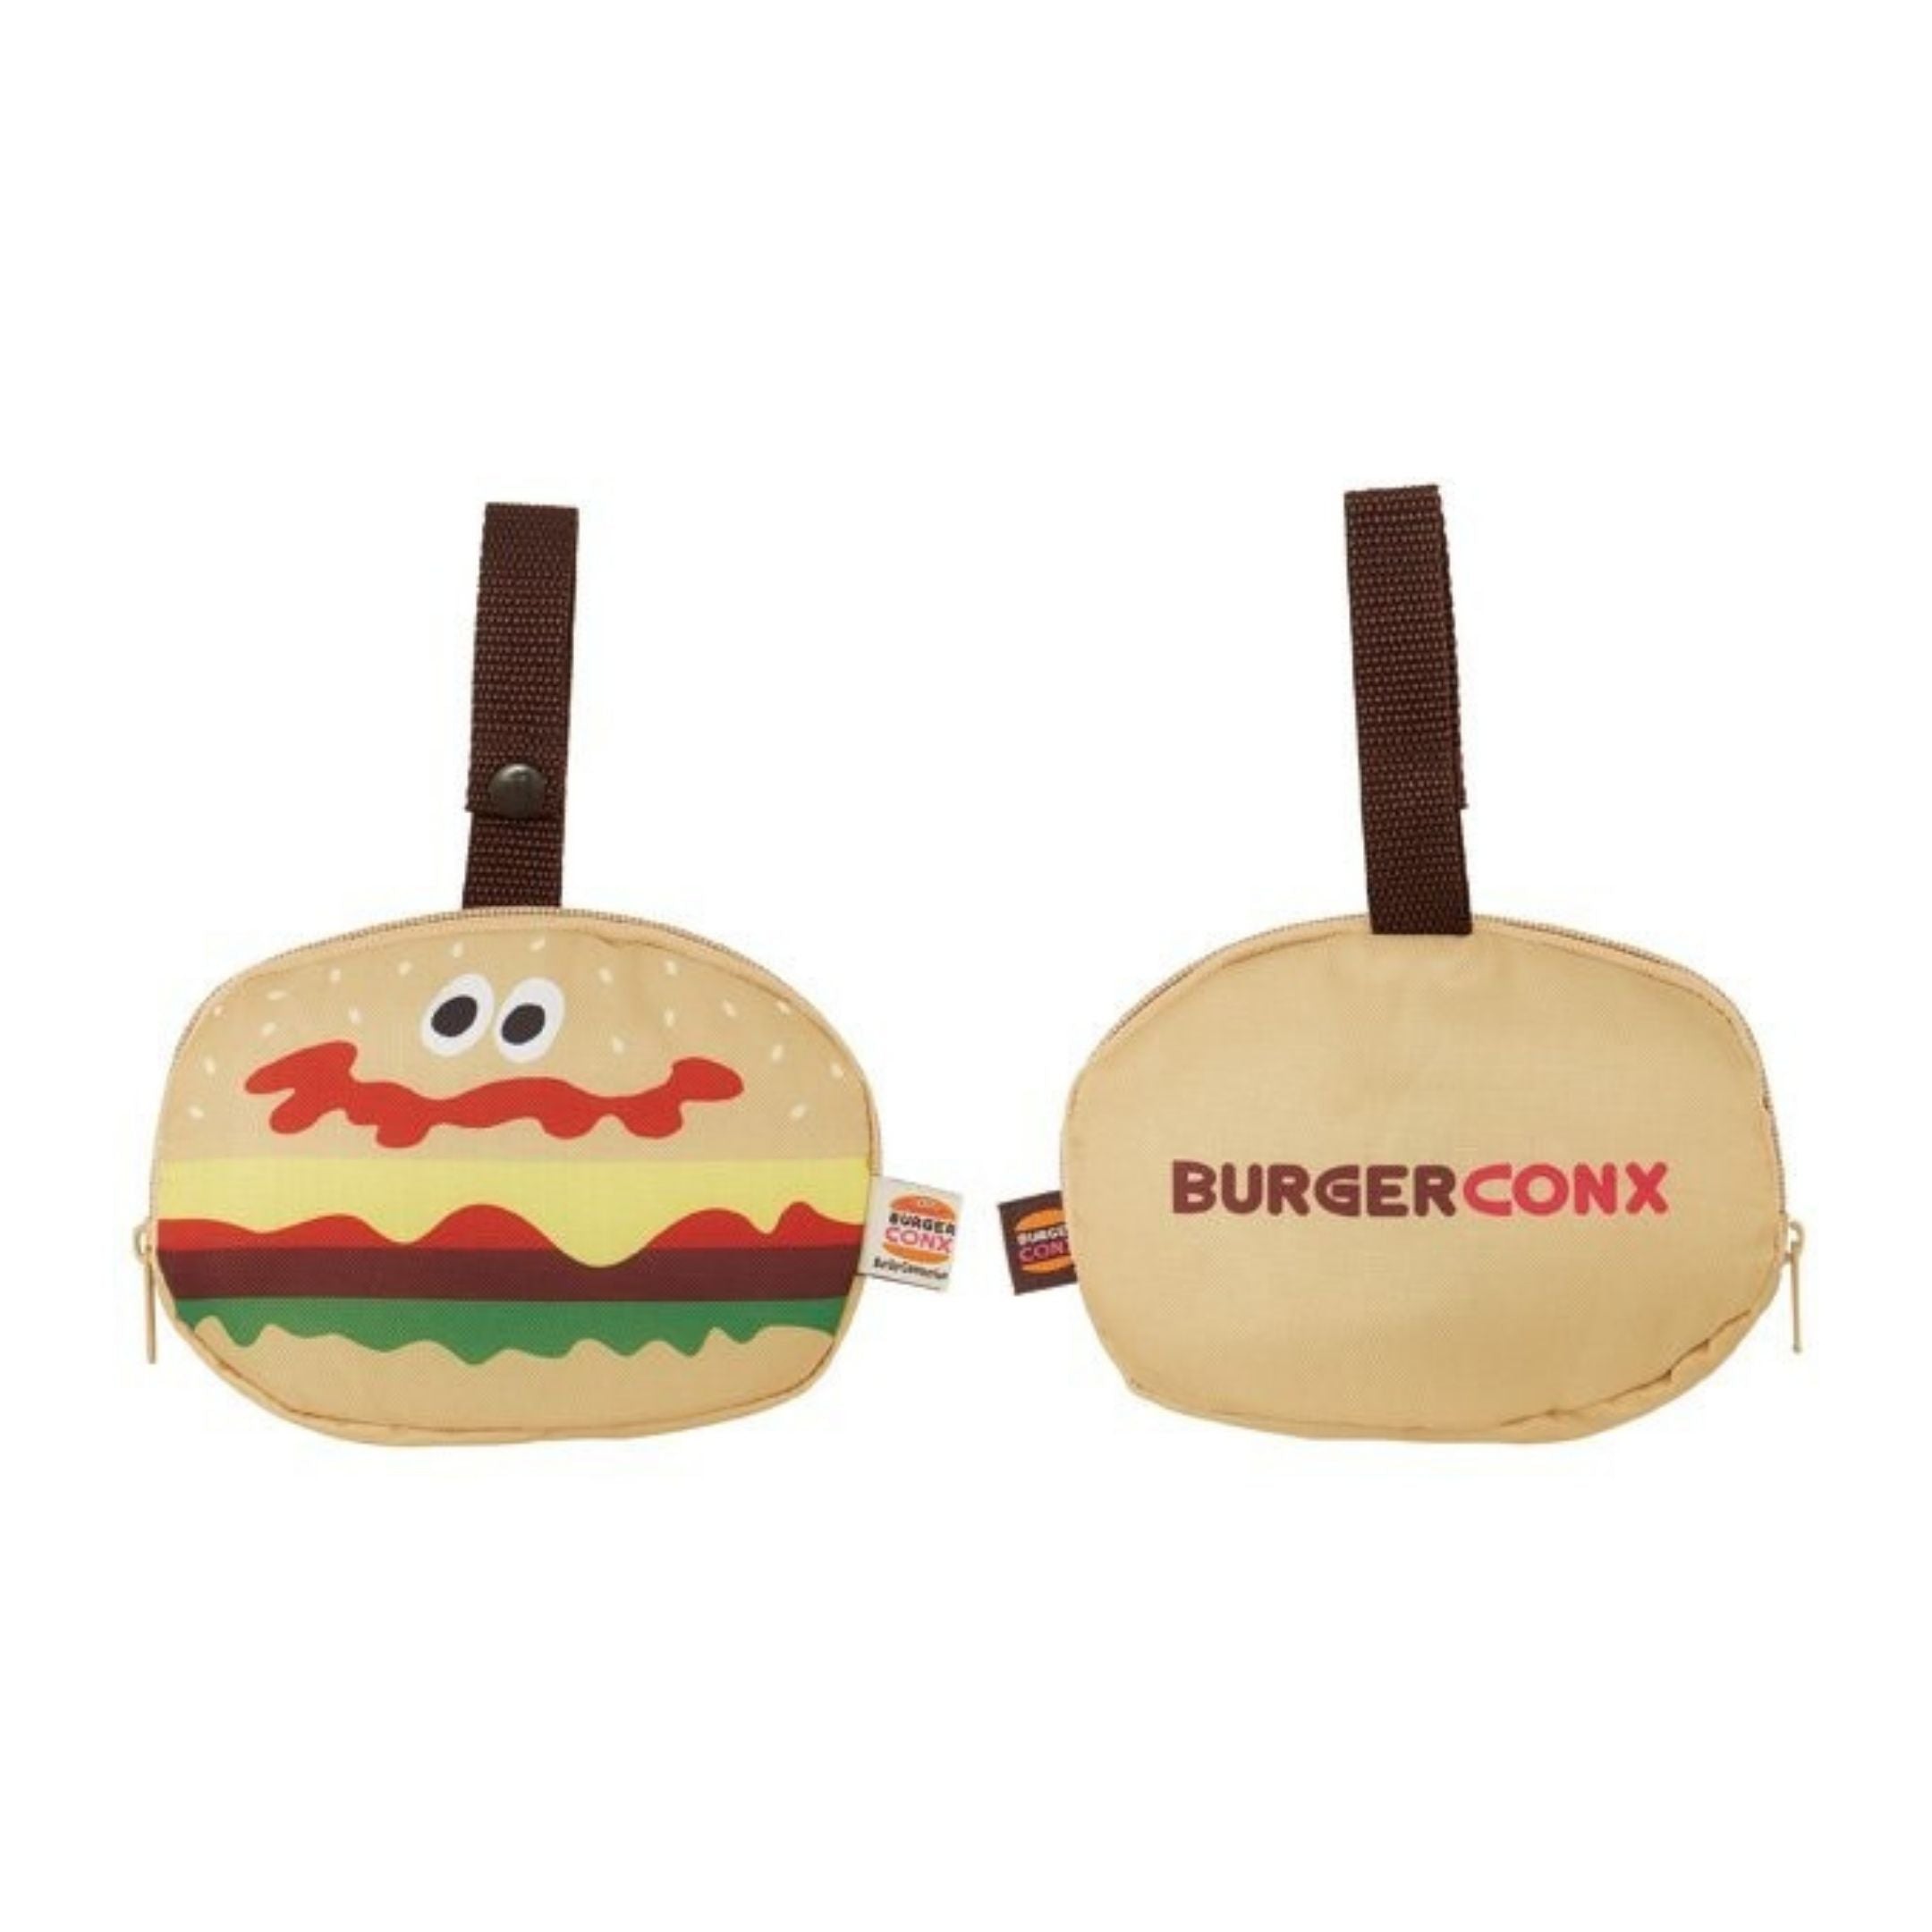 Hamburger Shopping Bag